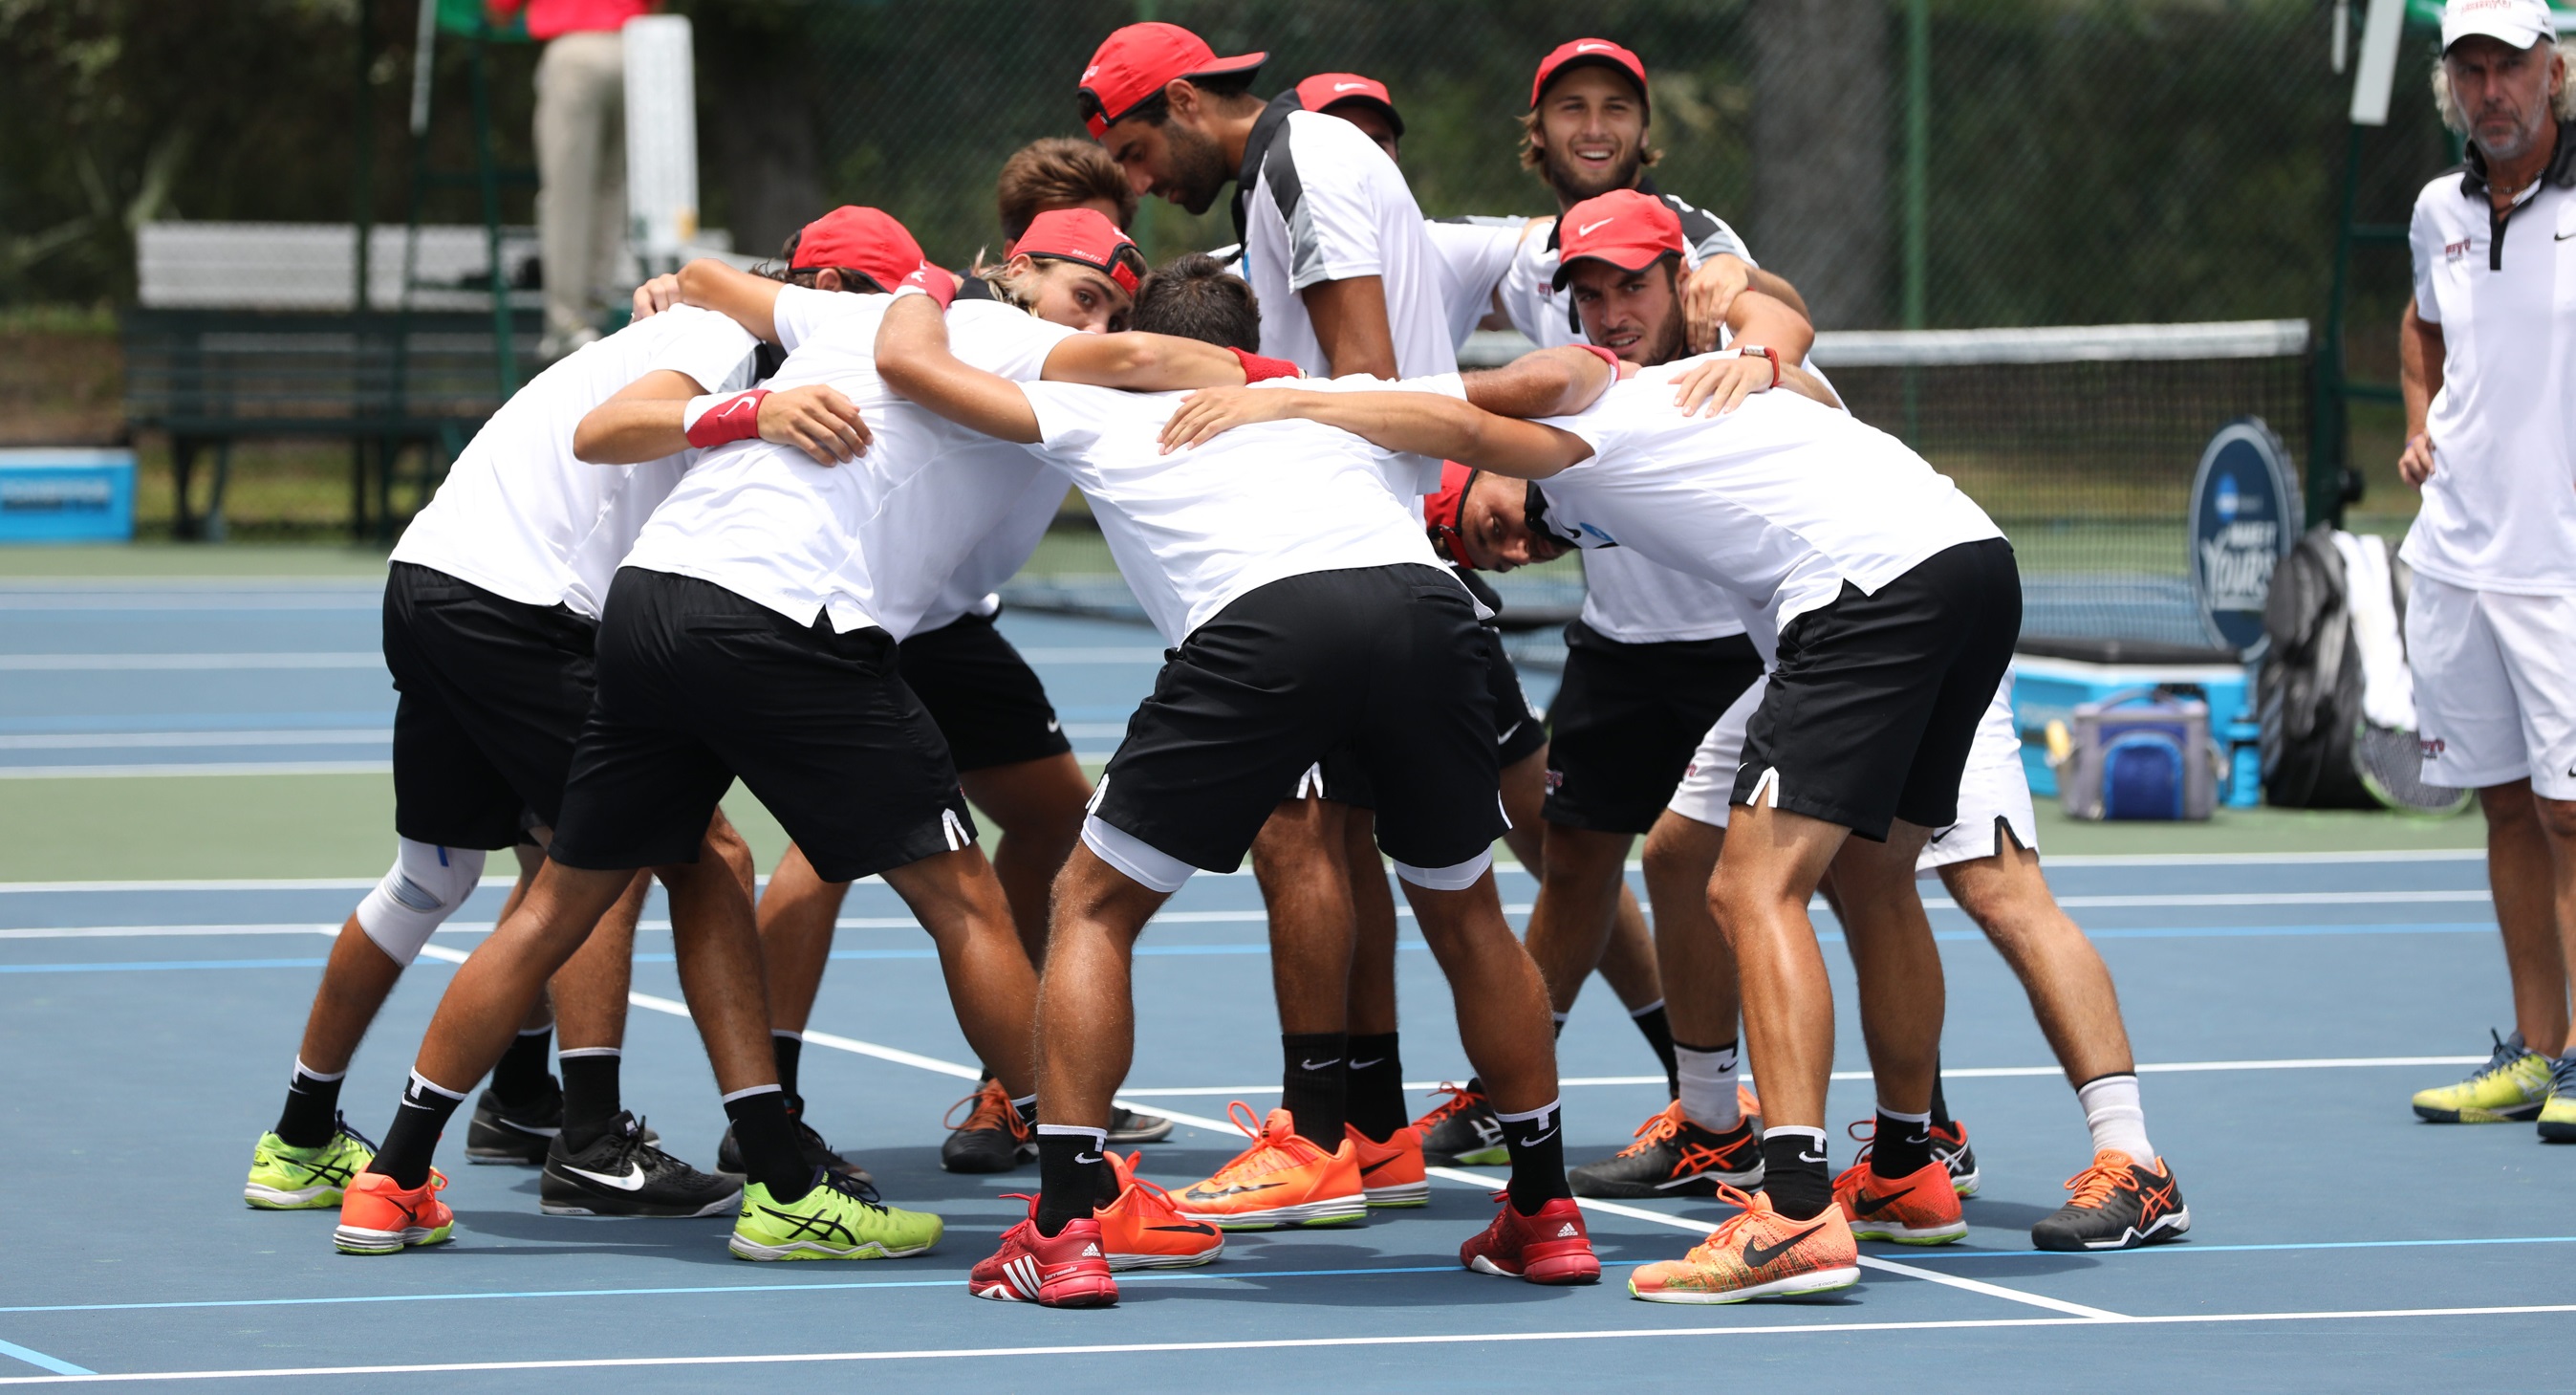 2017 NCAA DII Men's Tennis Championship at Sanlando Park in Seminole County, Florida